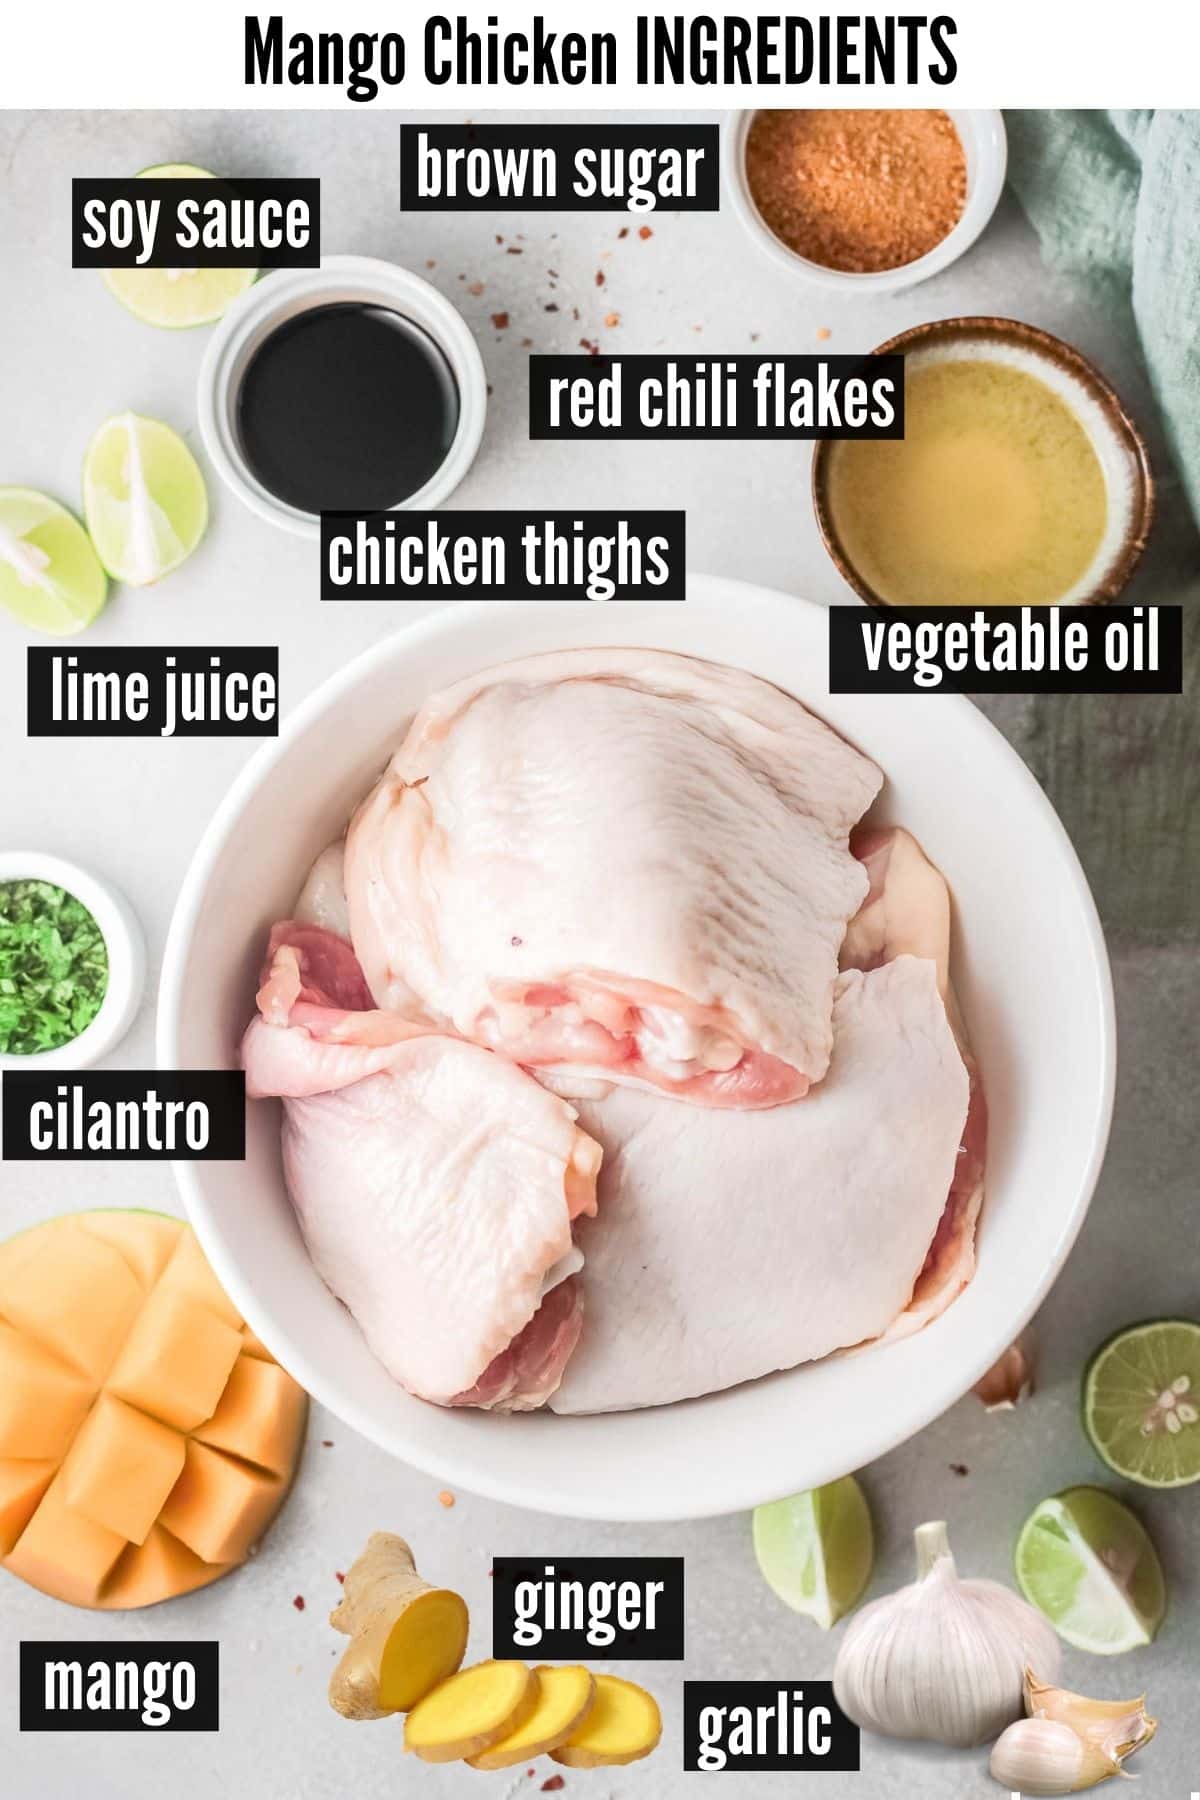 mango chicken ingredients labelled